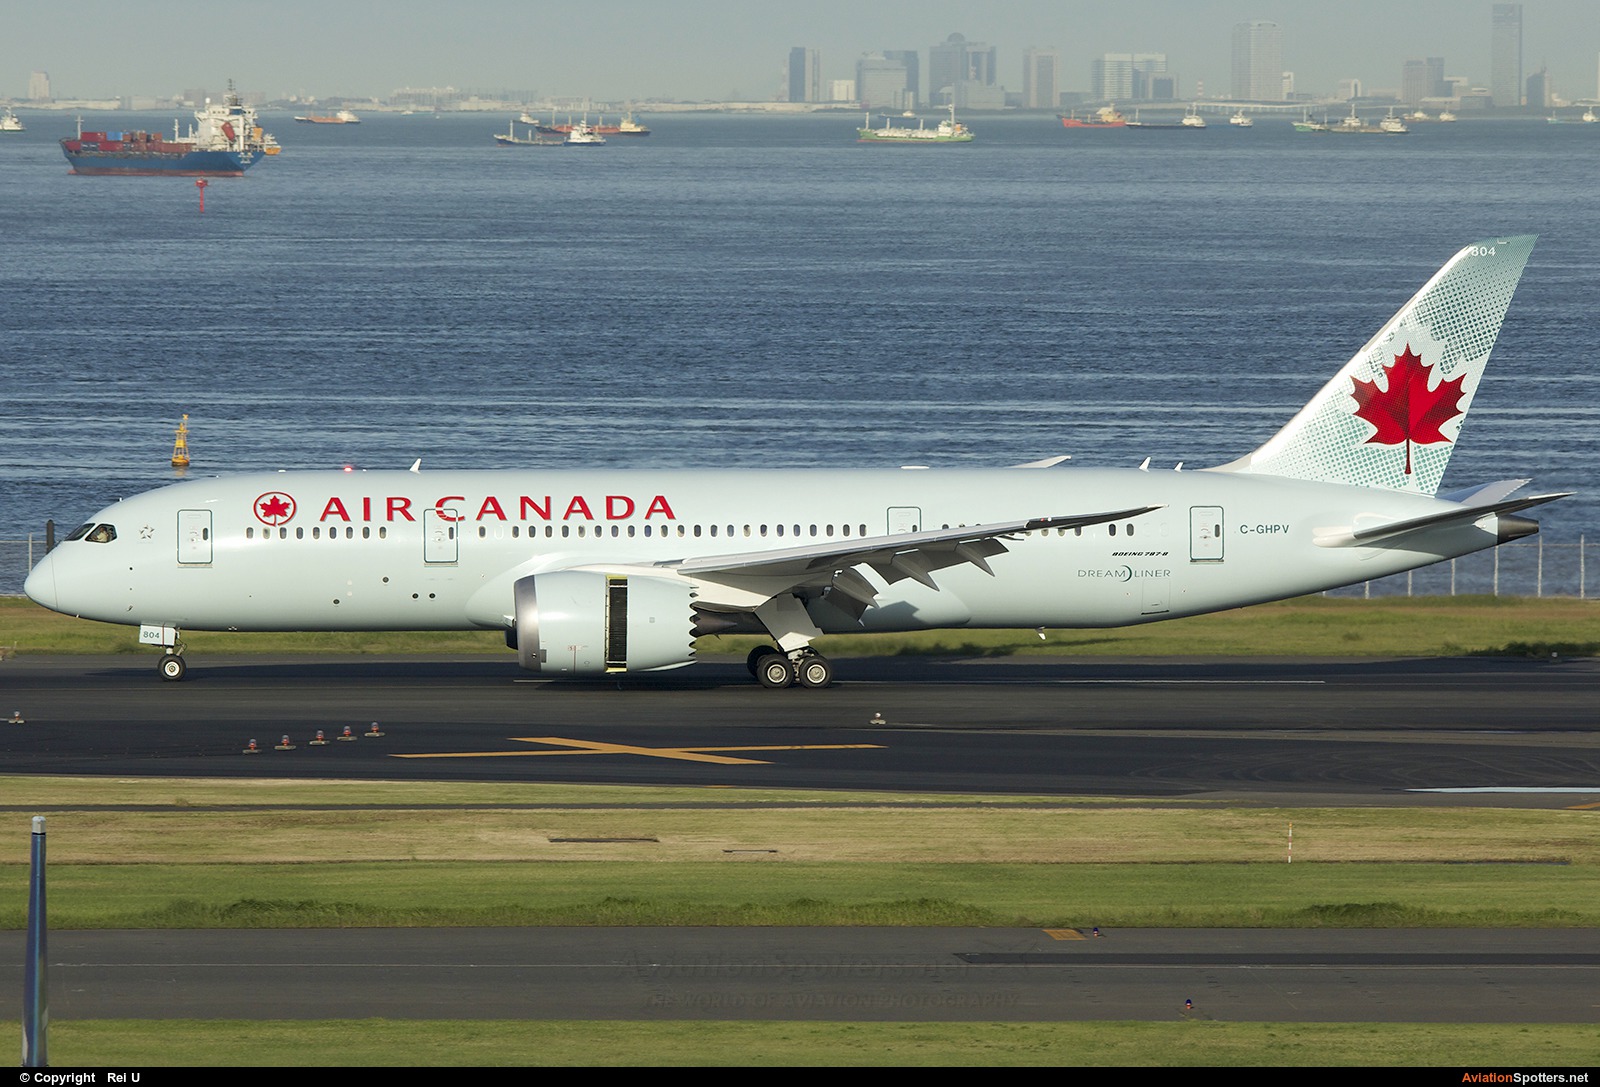 Air Canada  -  787-8 Dreamliner  (C-GHPV) By Rei U (reihnd)